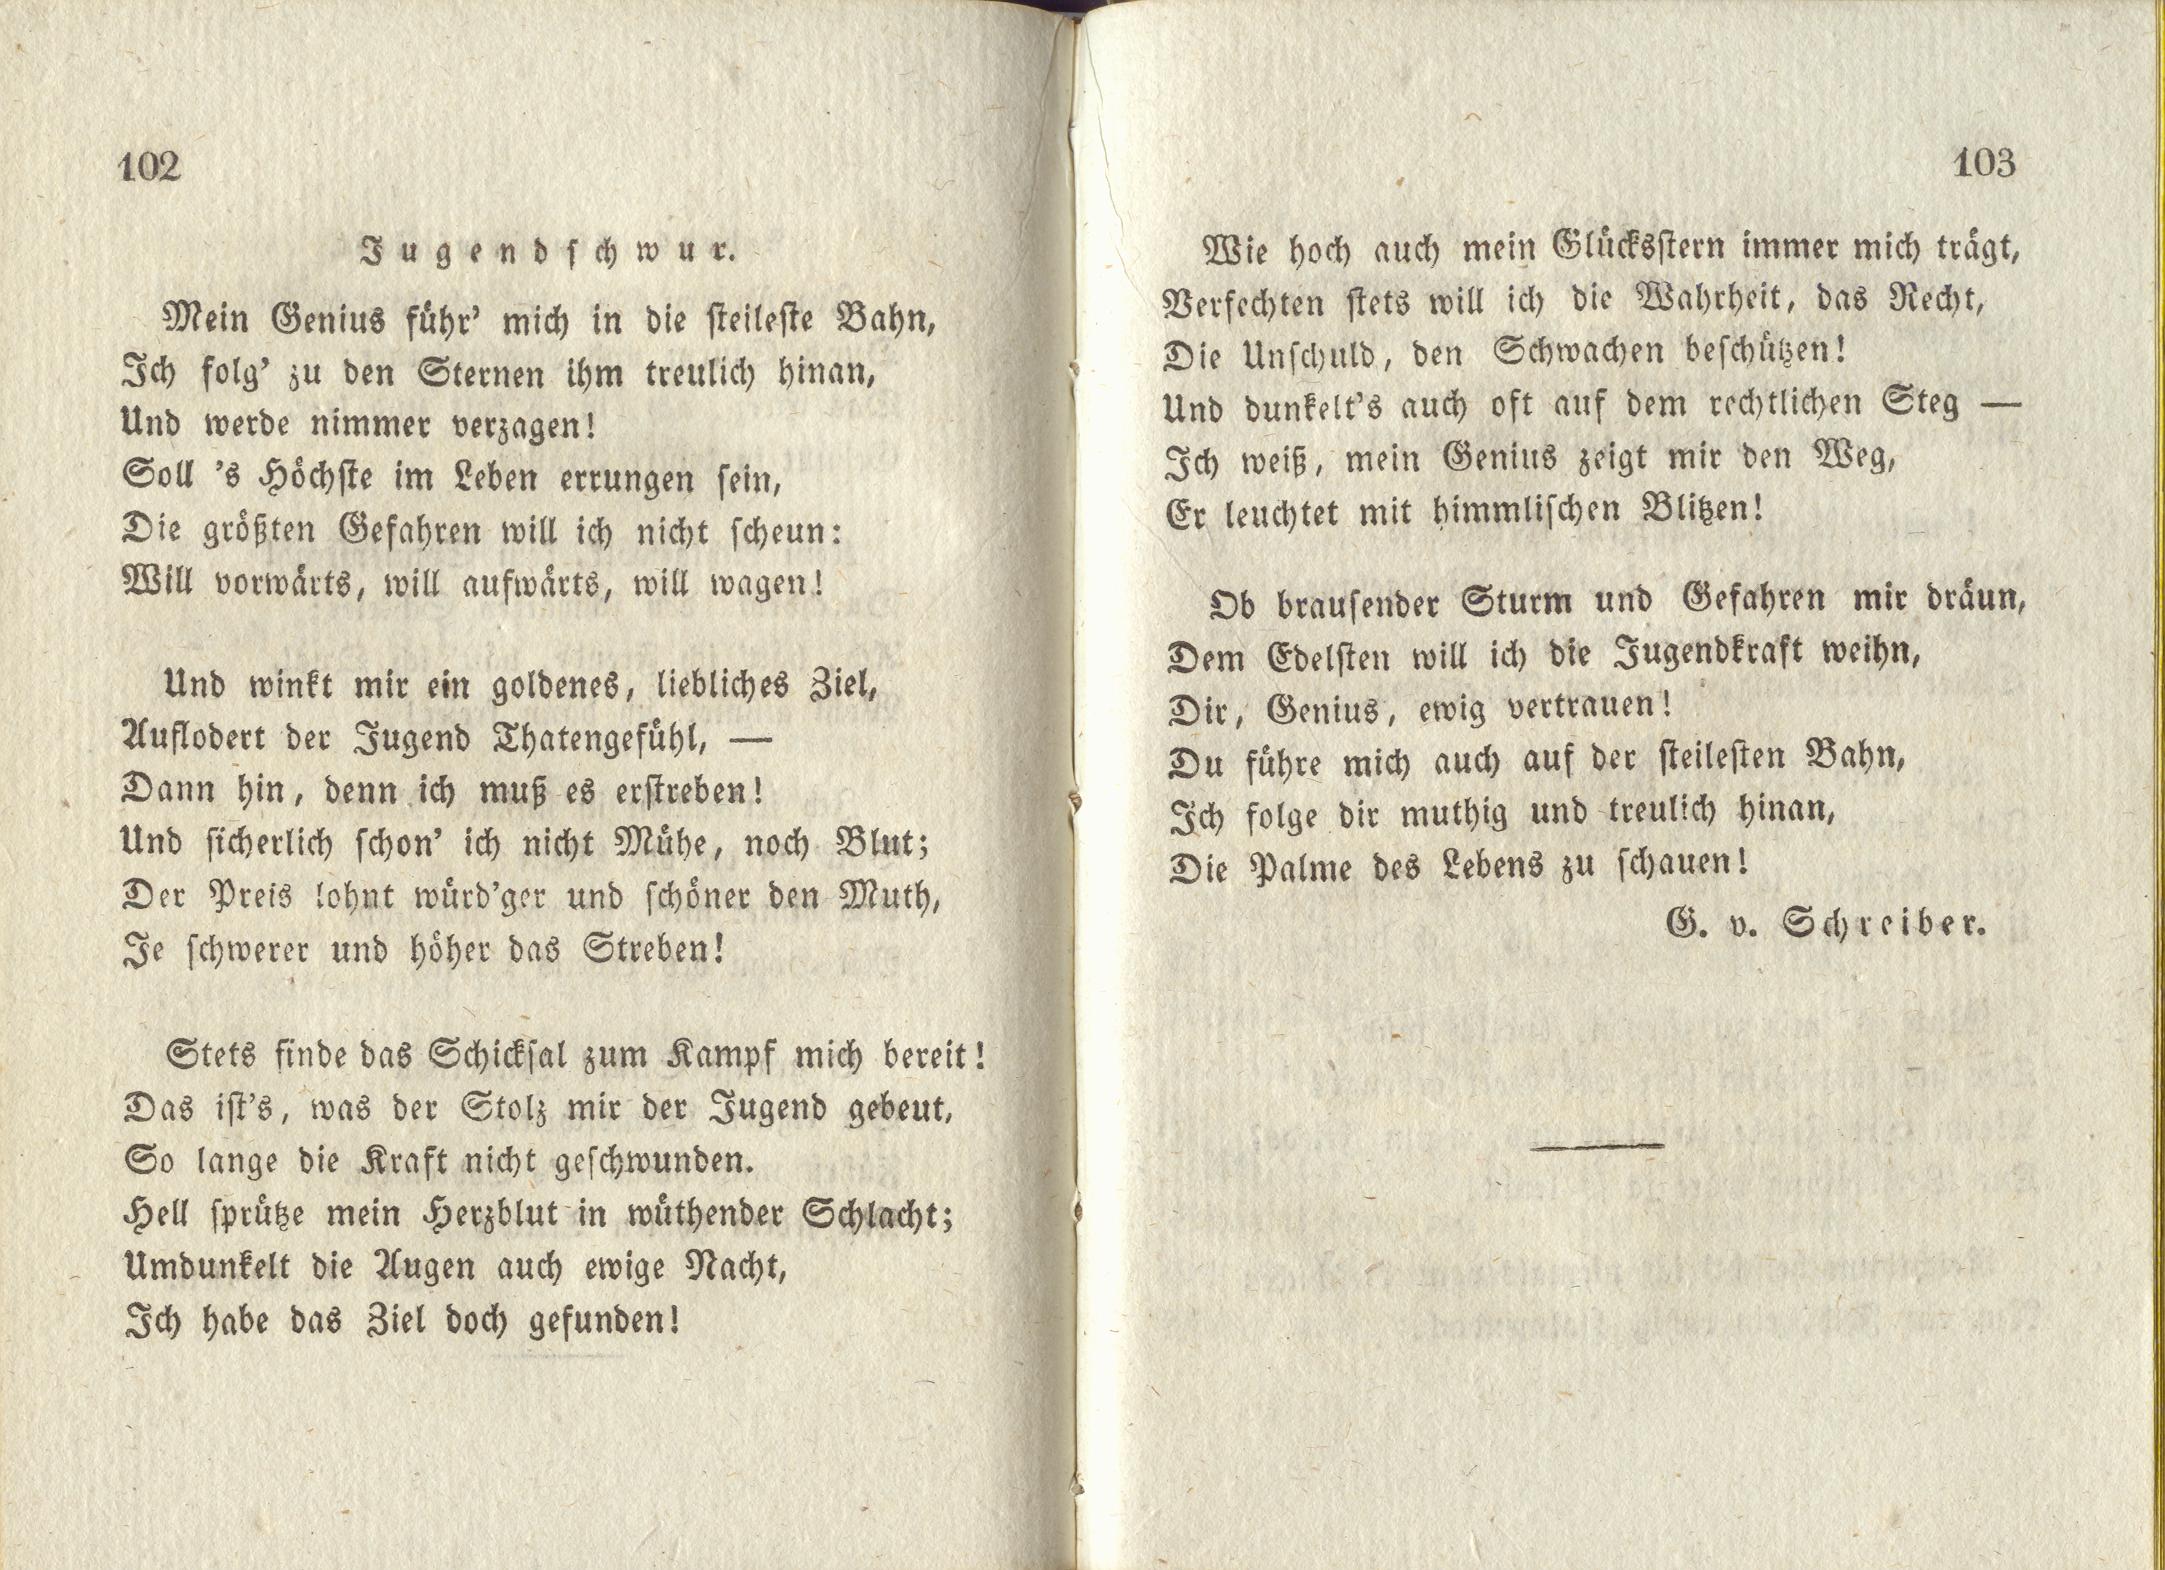 Jugendschwur (1830) | 1. (102-103) Haupttext